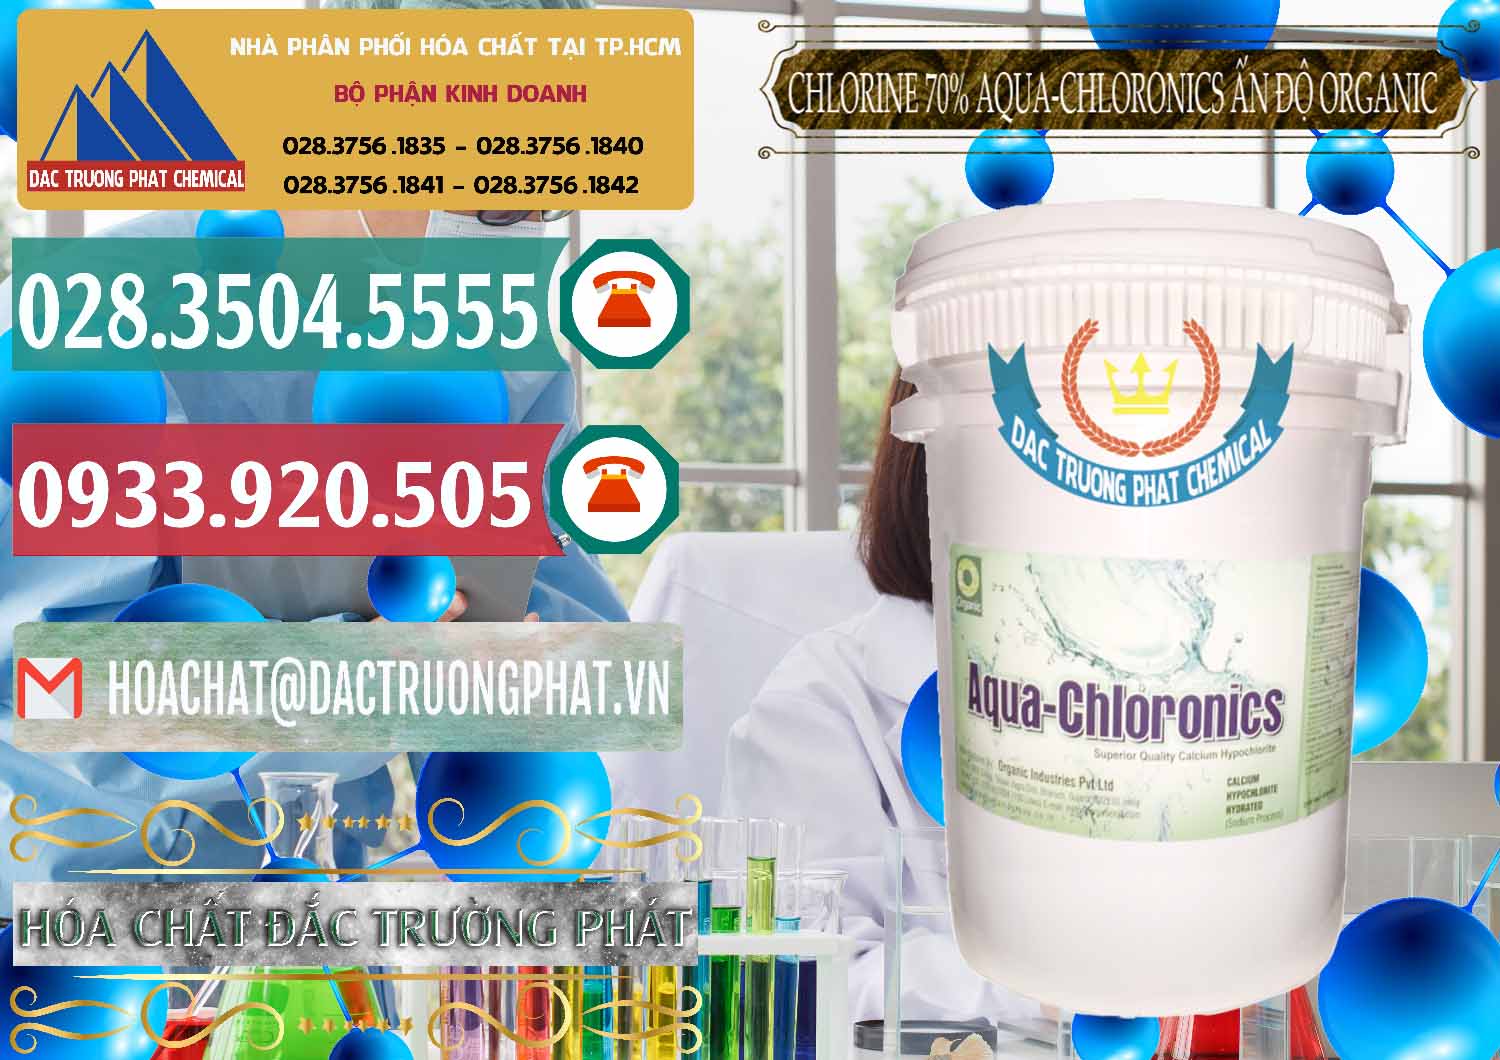 Chuyên cung ứng ( bán ) Chlorine – Clorin 70% Aqua-Chloronics Ấn Độ Organic India - 0211 - Nơi chuyên bán ( phân phối ) hóa chất tại TP.HCM - muabanhoachat.vn